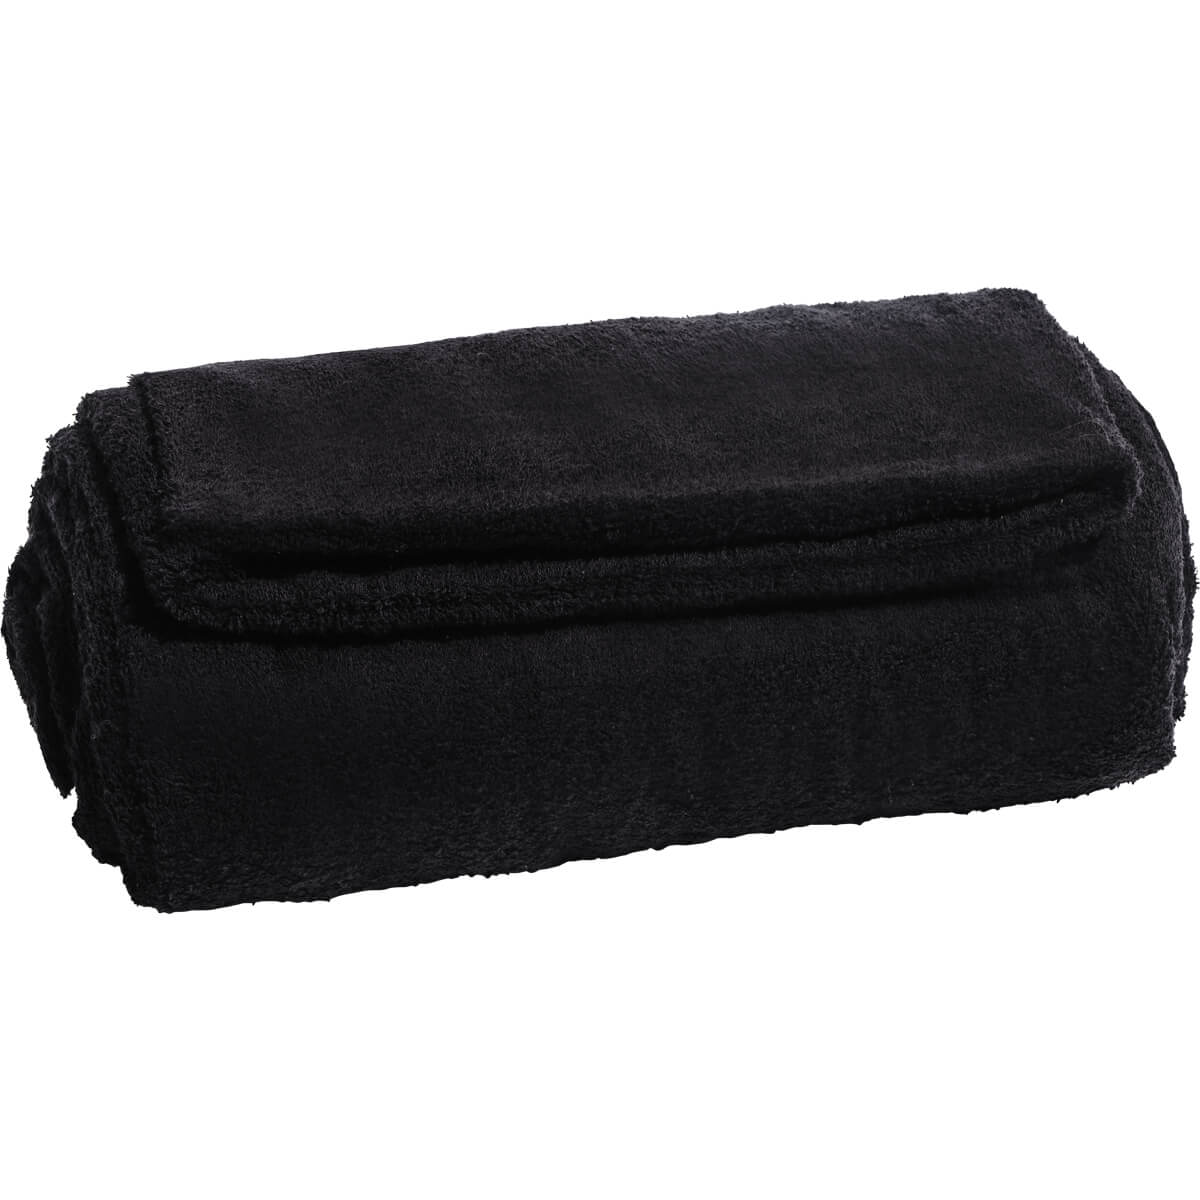 higherdose inserto in asciugamano per coperta da sauna a infrarossi donna